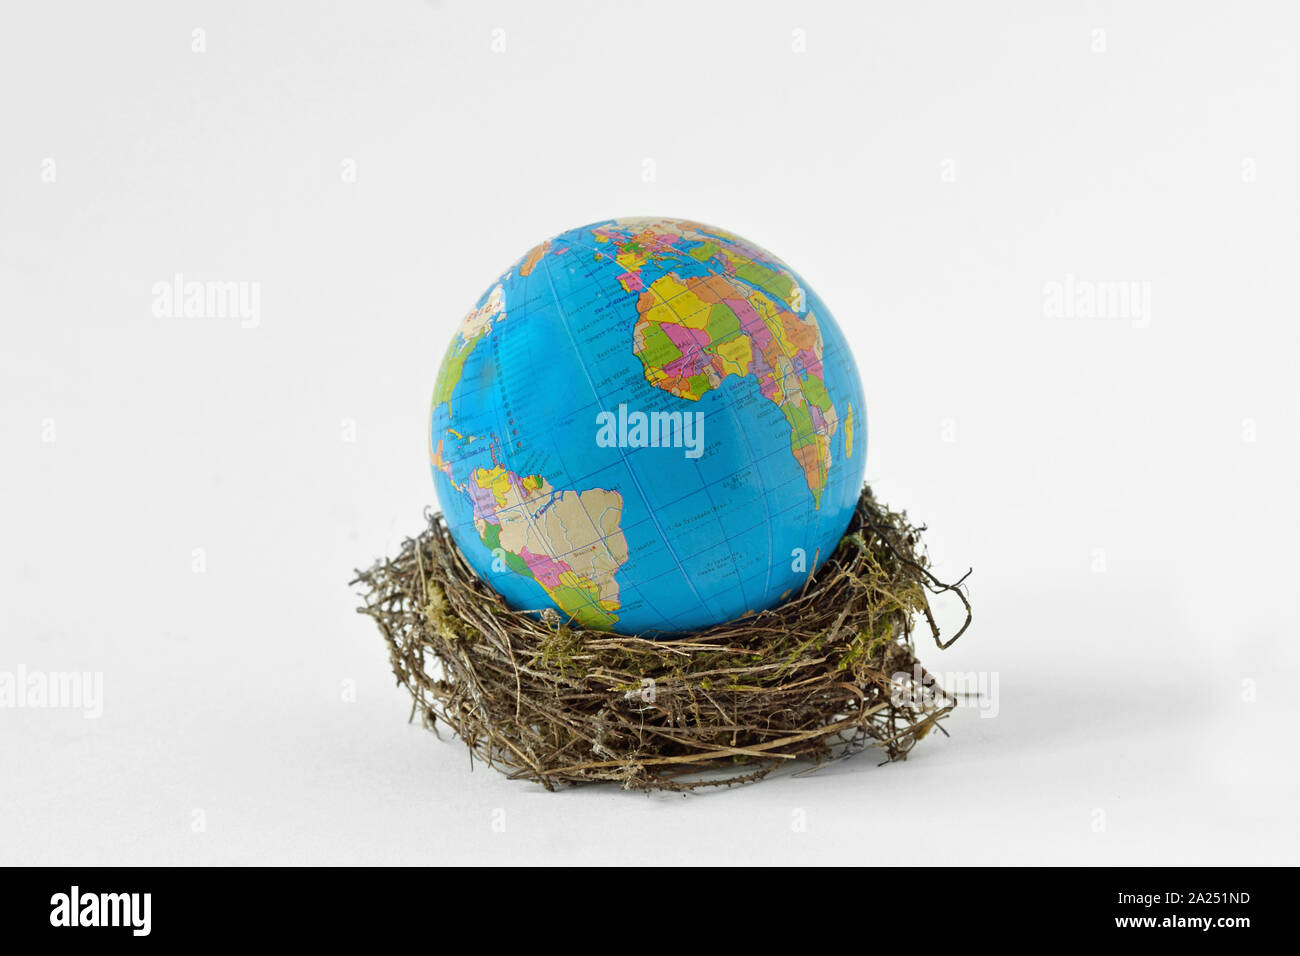 La planète terre dans un nid d'oiseaux sur fond blanc - Concept de la conservation de l'environnement et de la protection de la planète Banque D'Images